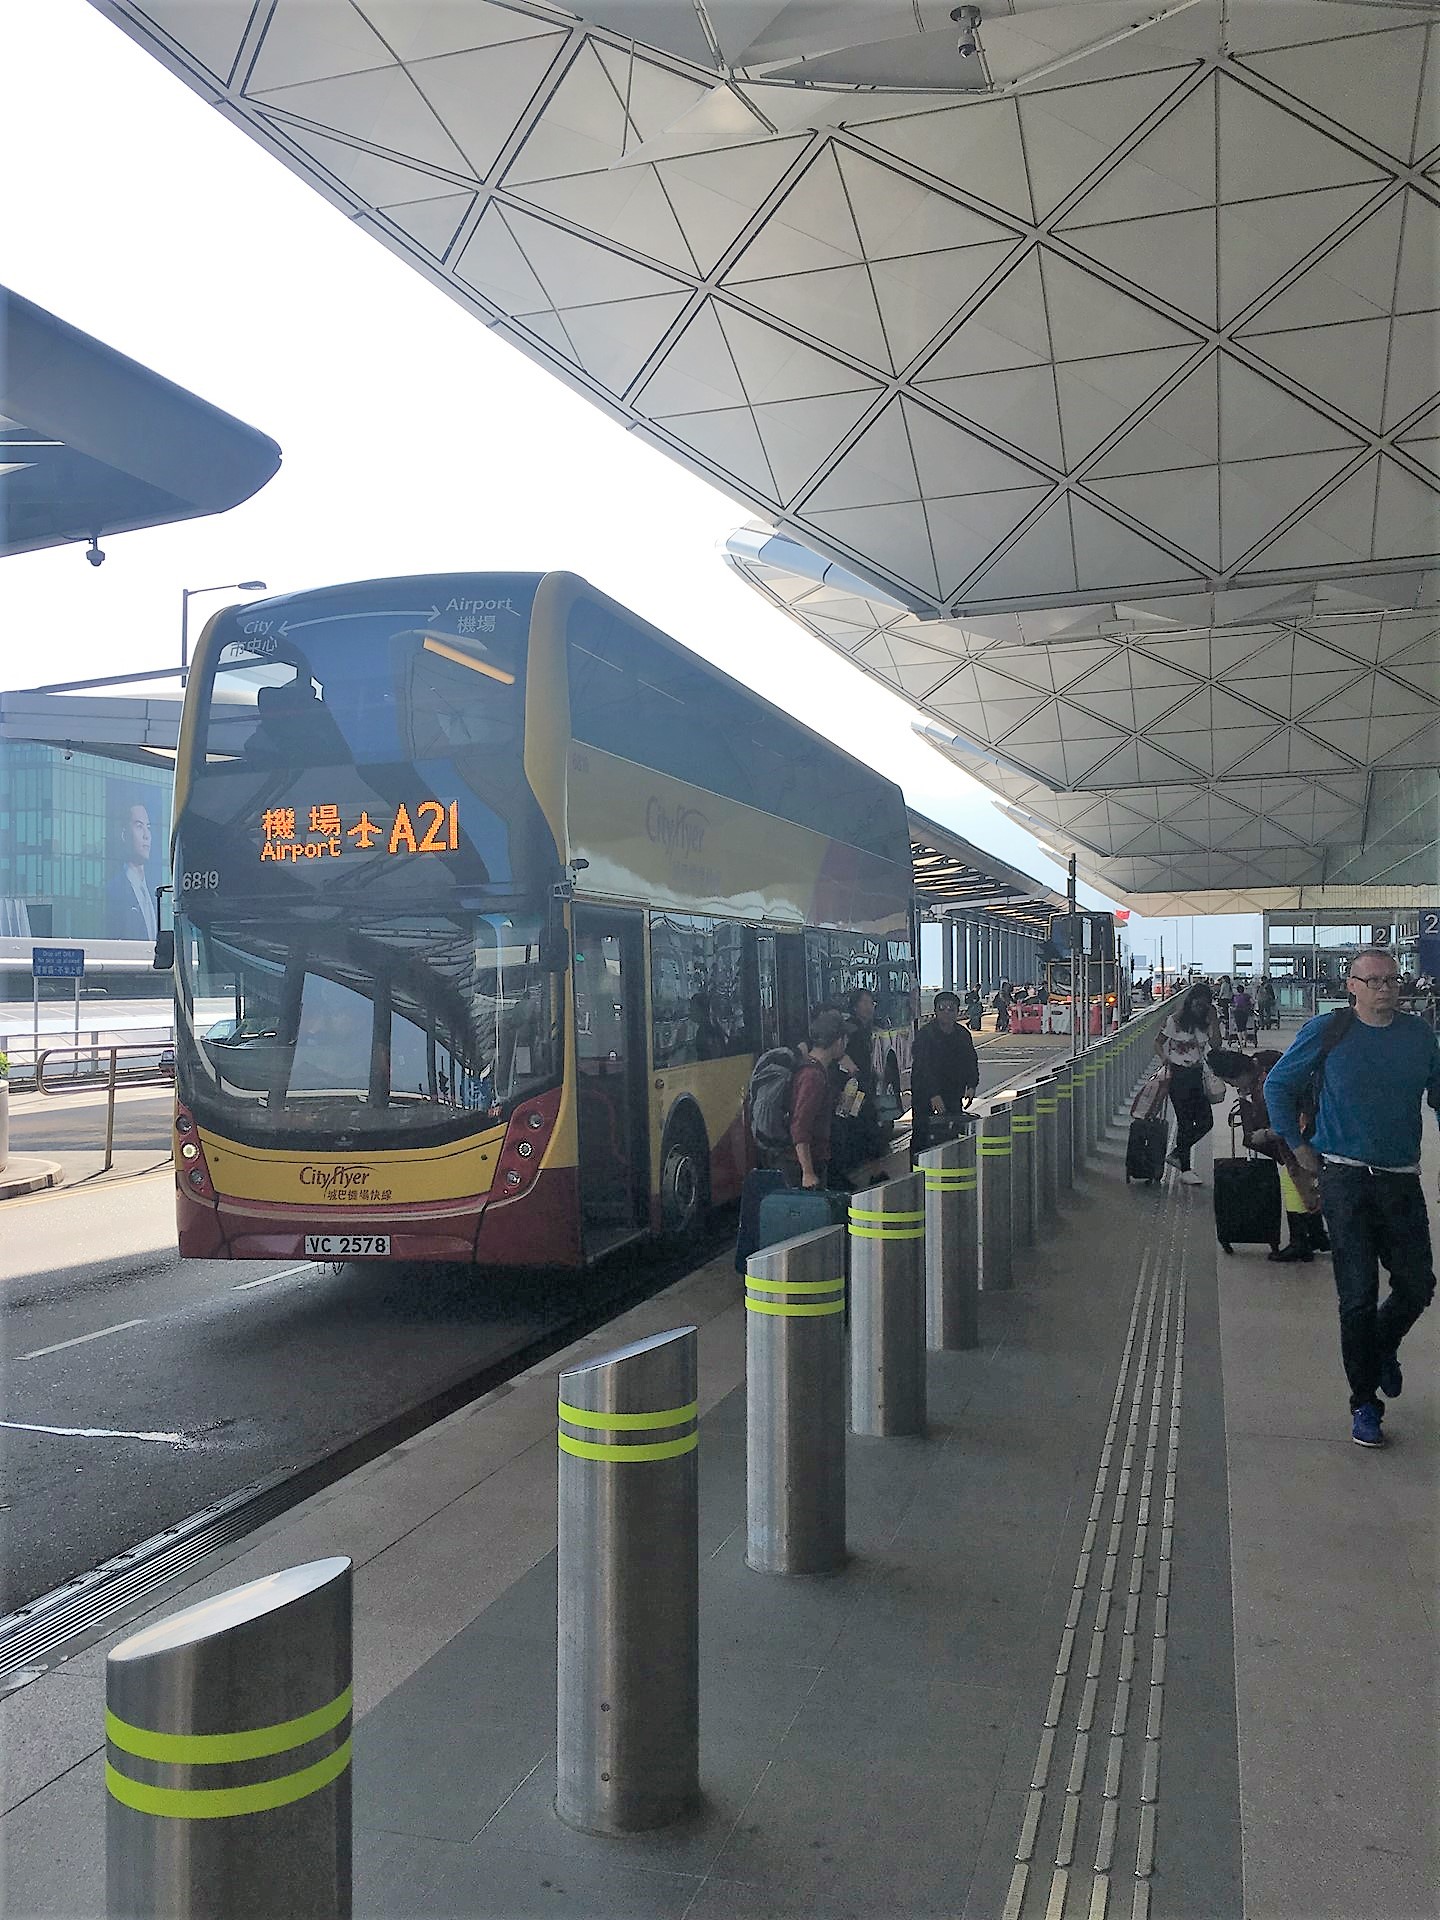 機場巴士（空港バス）A21系統 香港国際空港空港で33HK$